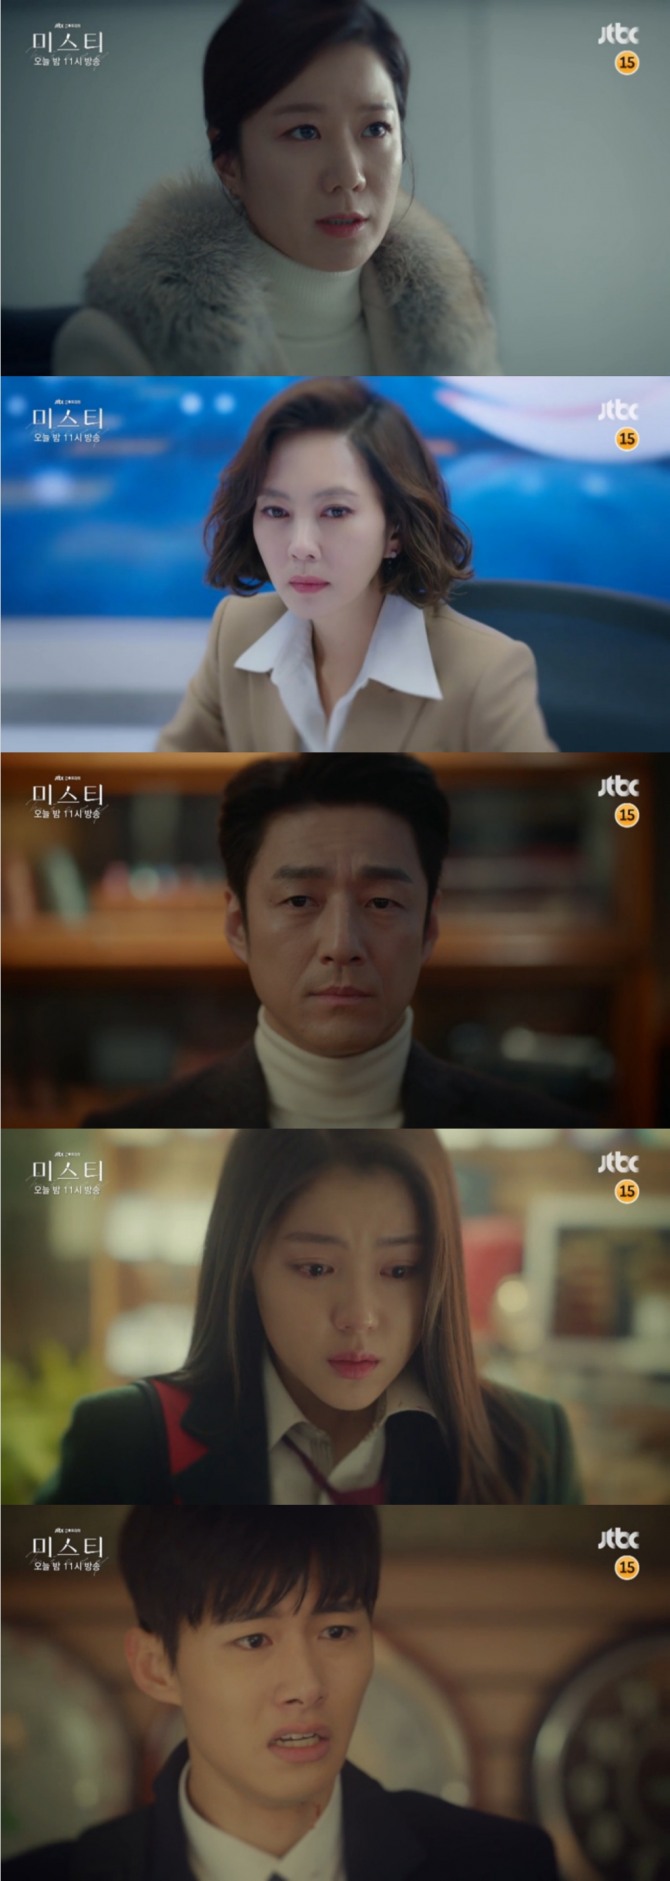 24일 밤 방송되는 JTBC 토일드라마 '미스티' 8회에서는 서은주(전혜진)가 블랙박스 칩으로 고혜란(김남주)를 위협해 긴장감을 높인다. 사진=JTBC 영상 캡처